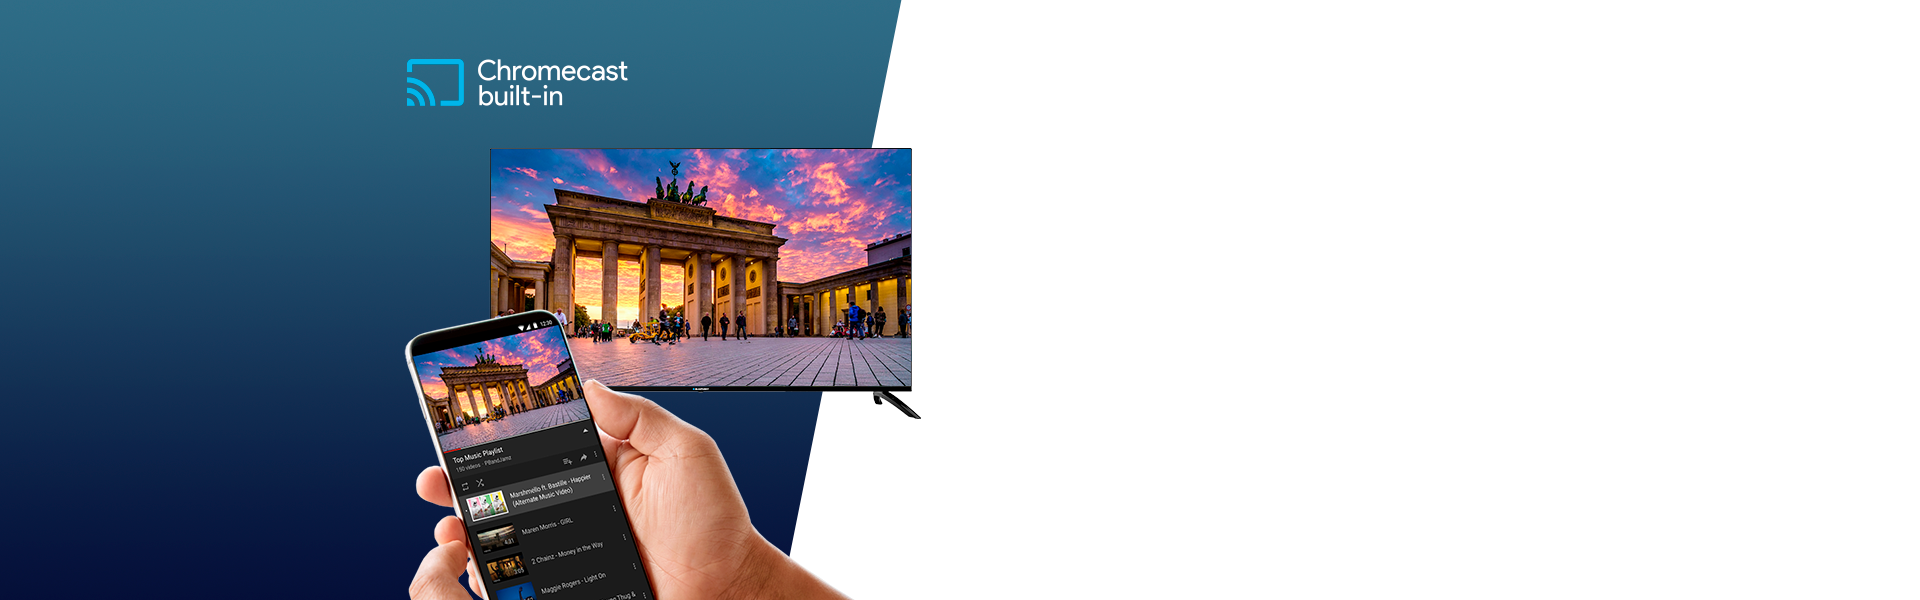 Телевизор UHD 4K Android TV Blaupunkt 65UBC6000